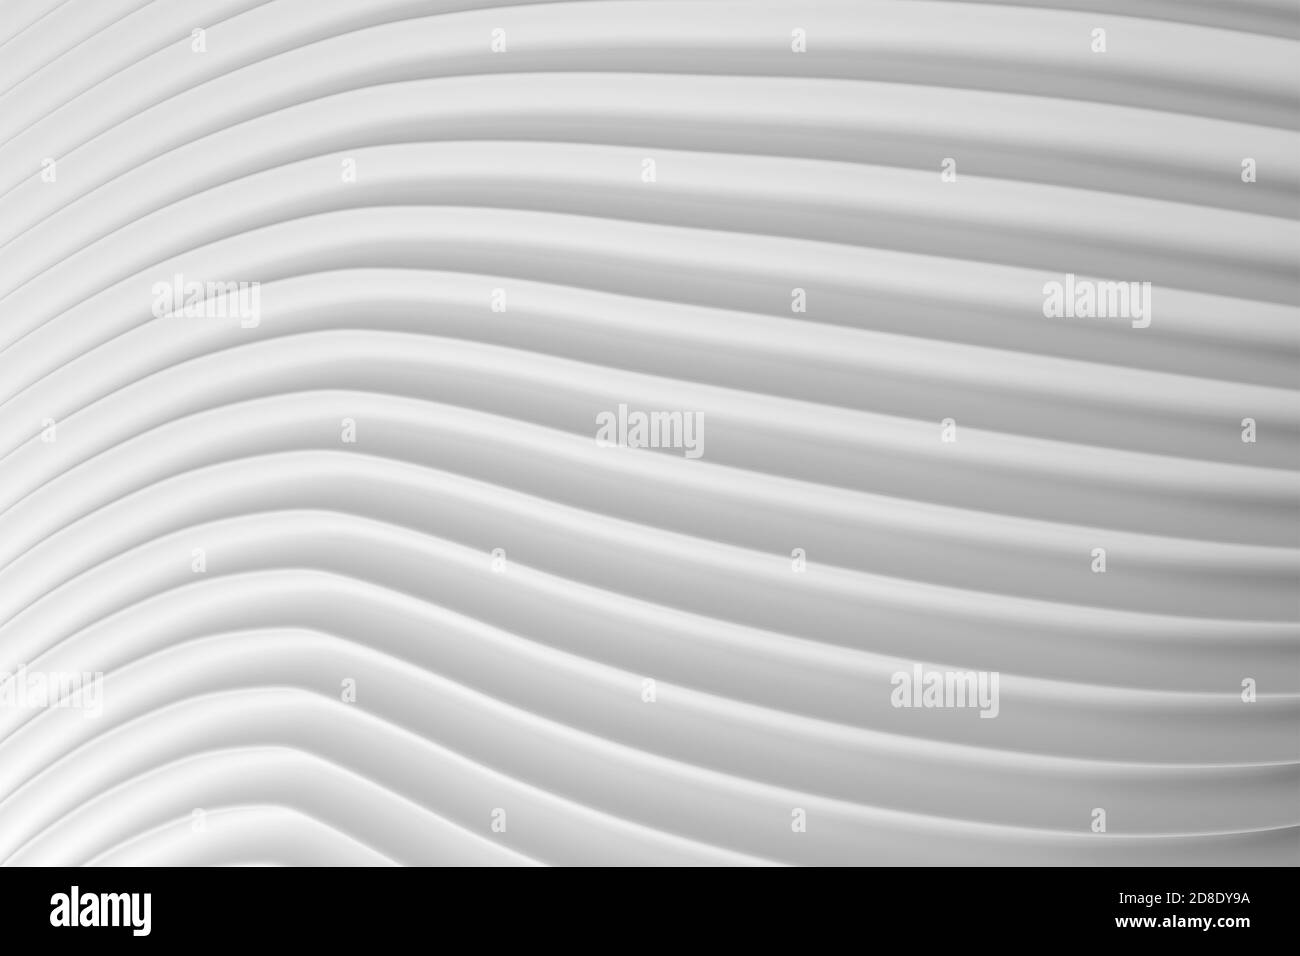 Illustrazione in 3D di una superficie ondulata bianca astratta simile al tessuto o alla superficie deformata della lamiera del tetto. Sfondo curvo geometrico. Foto Stock